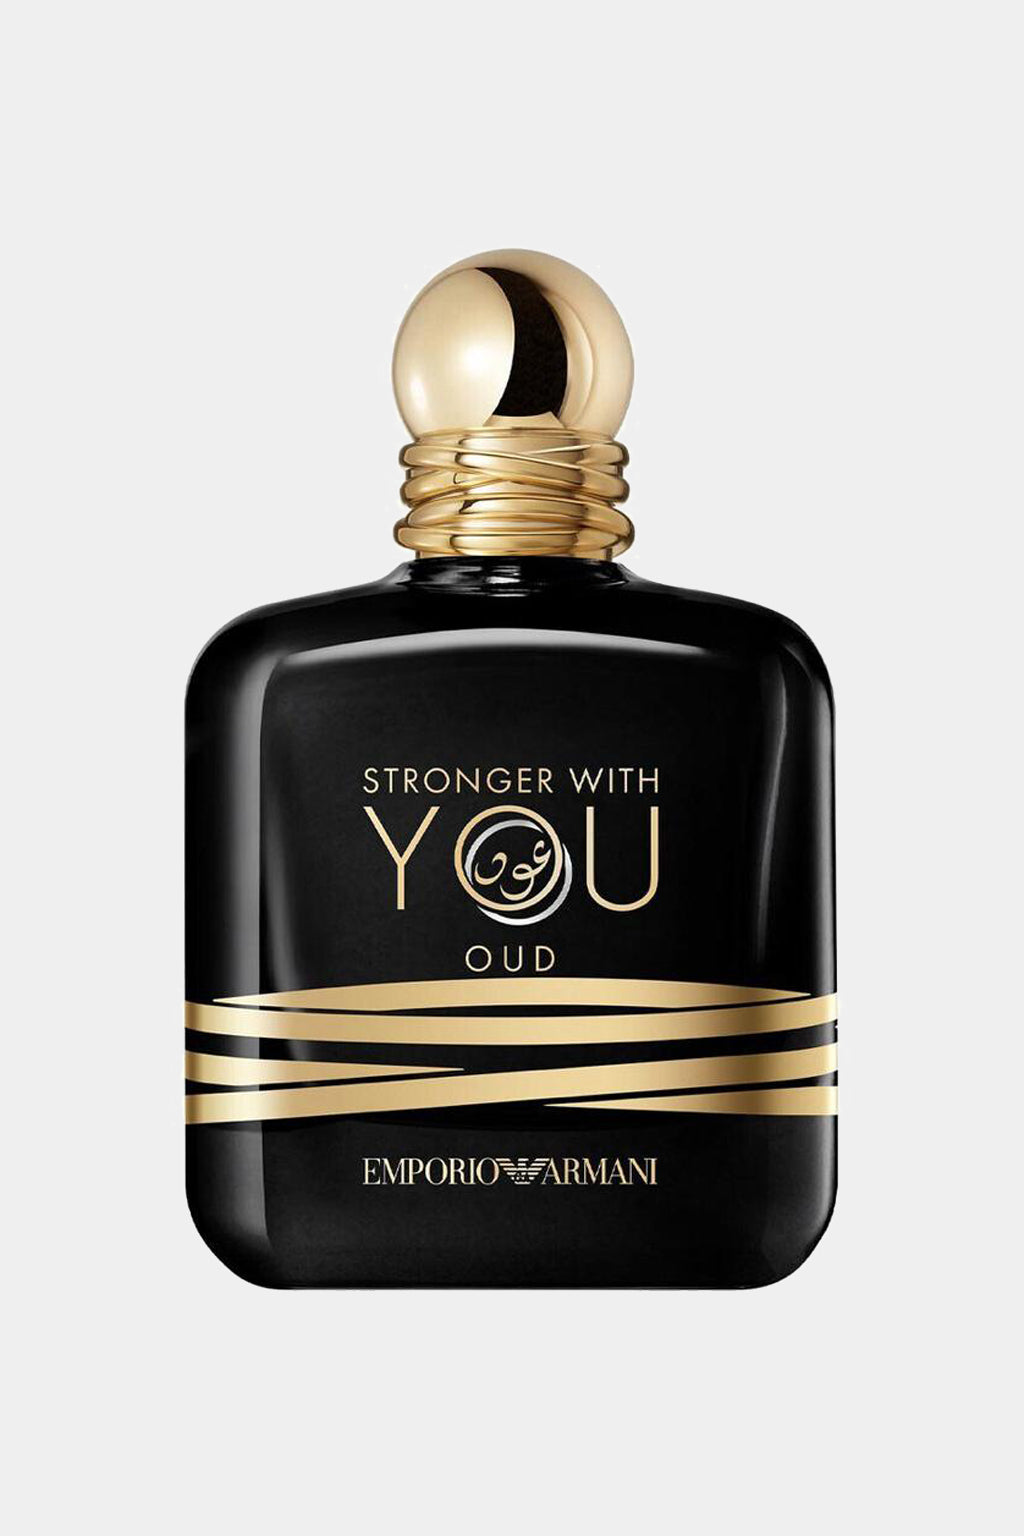 Emporio Armani - Stronger With You Oud Homme Eau de Parfum